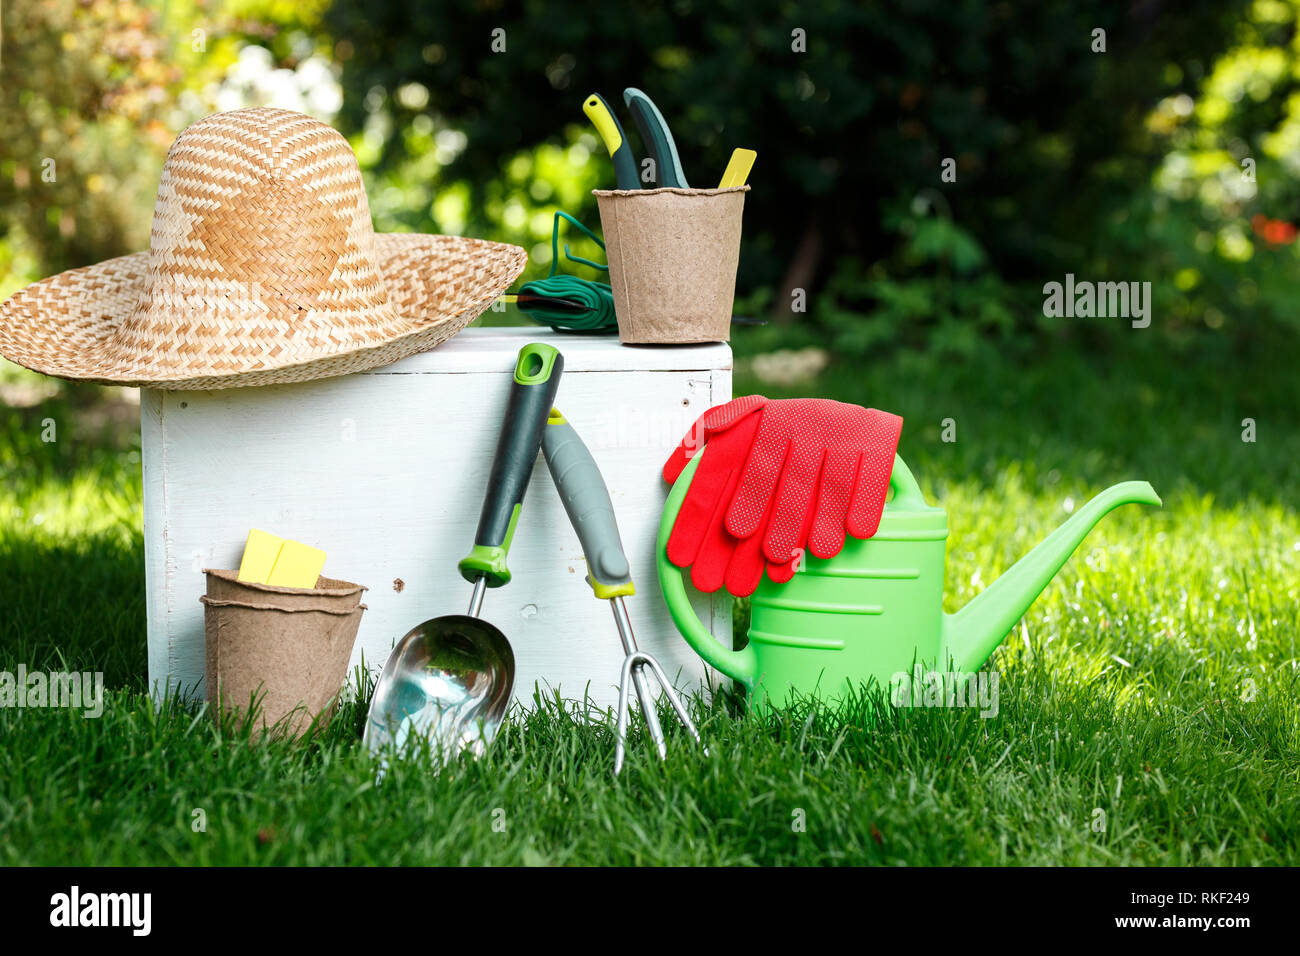 Attrezzi per giardinaggio, guanti, cappello di paglia e legno bianco sulla scatola verde erba, la manutenzione del giardino e il concetto di hobby Foto Stock